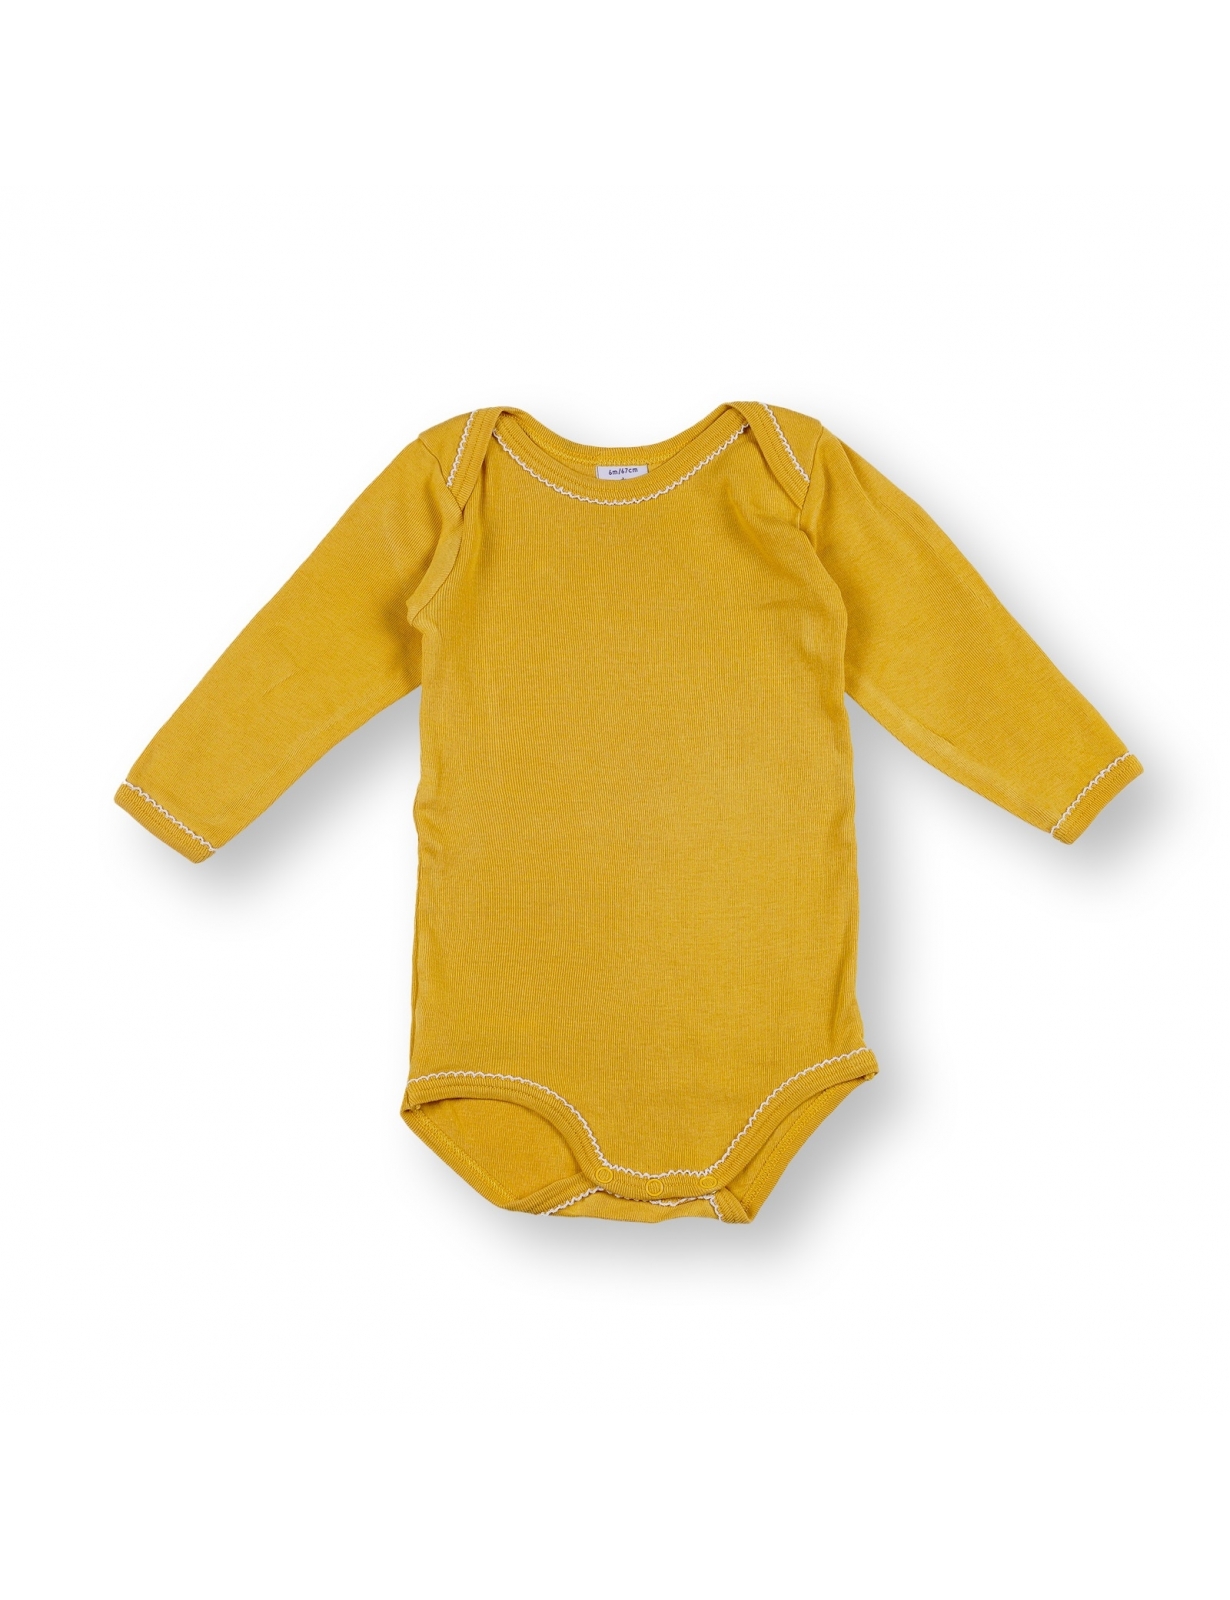 Body bébé fille 6 mois occasion - moutarde - marque Petit Bateau